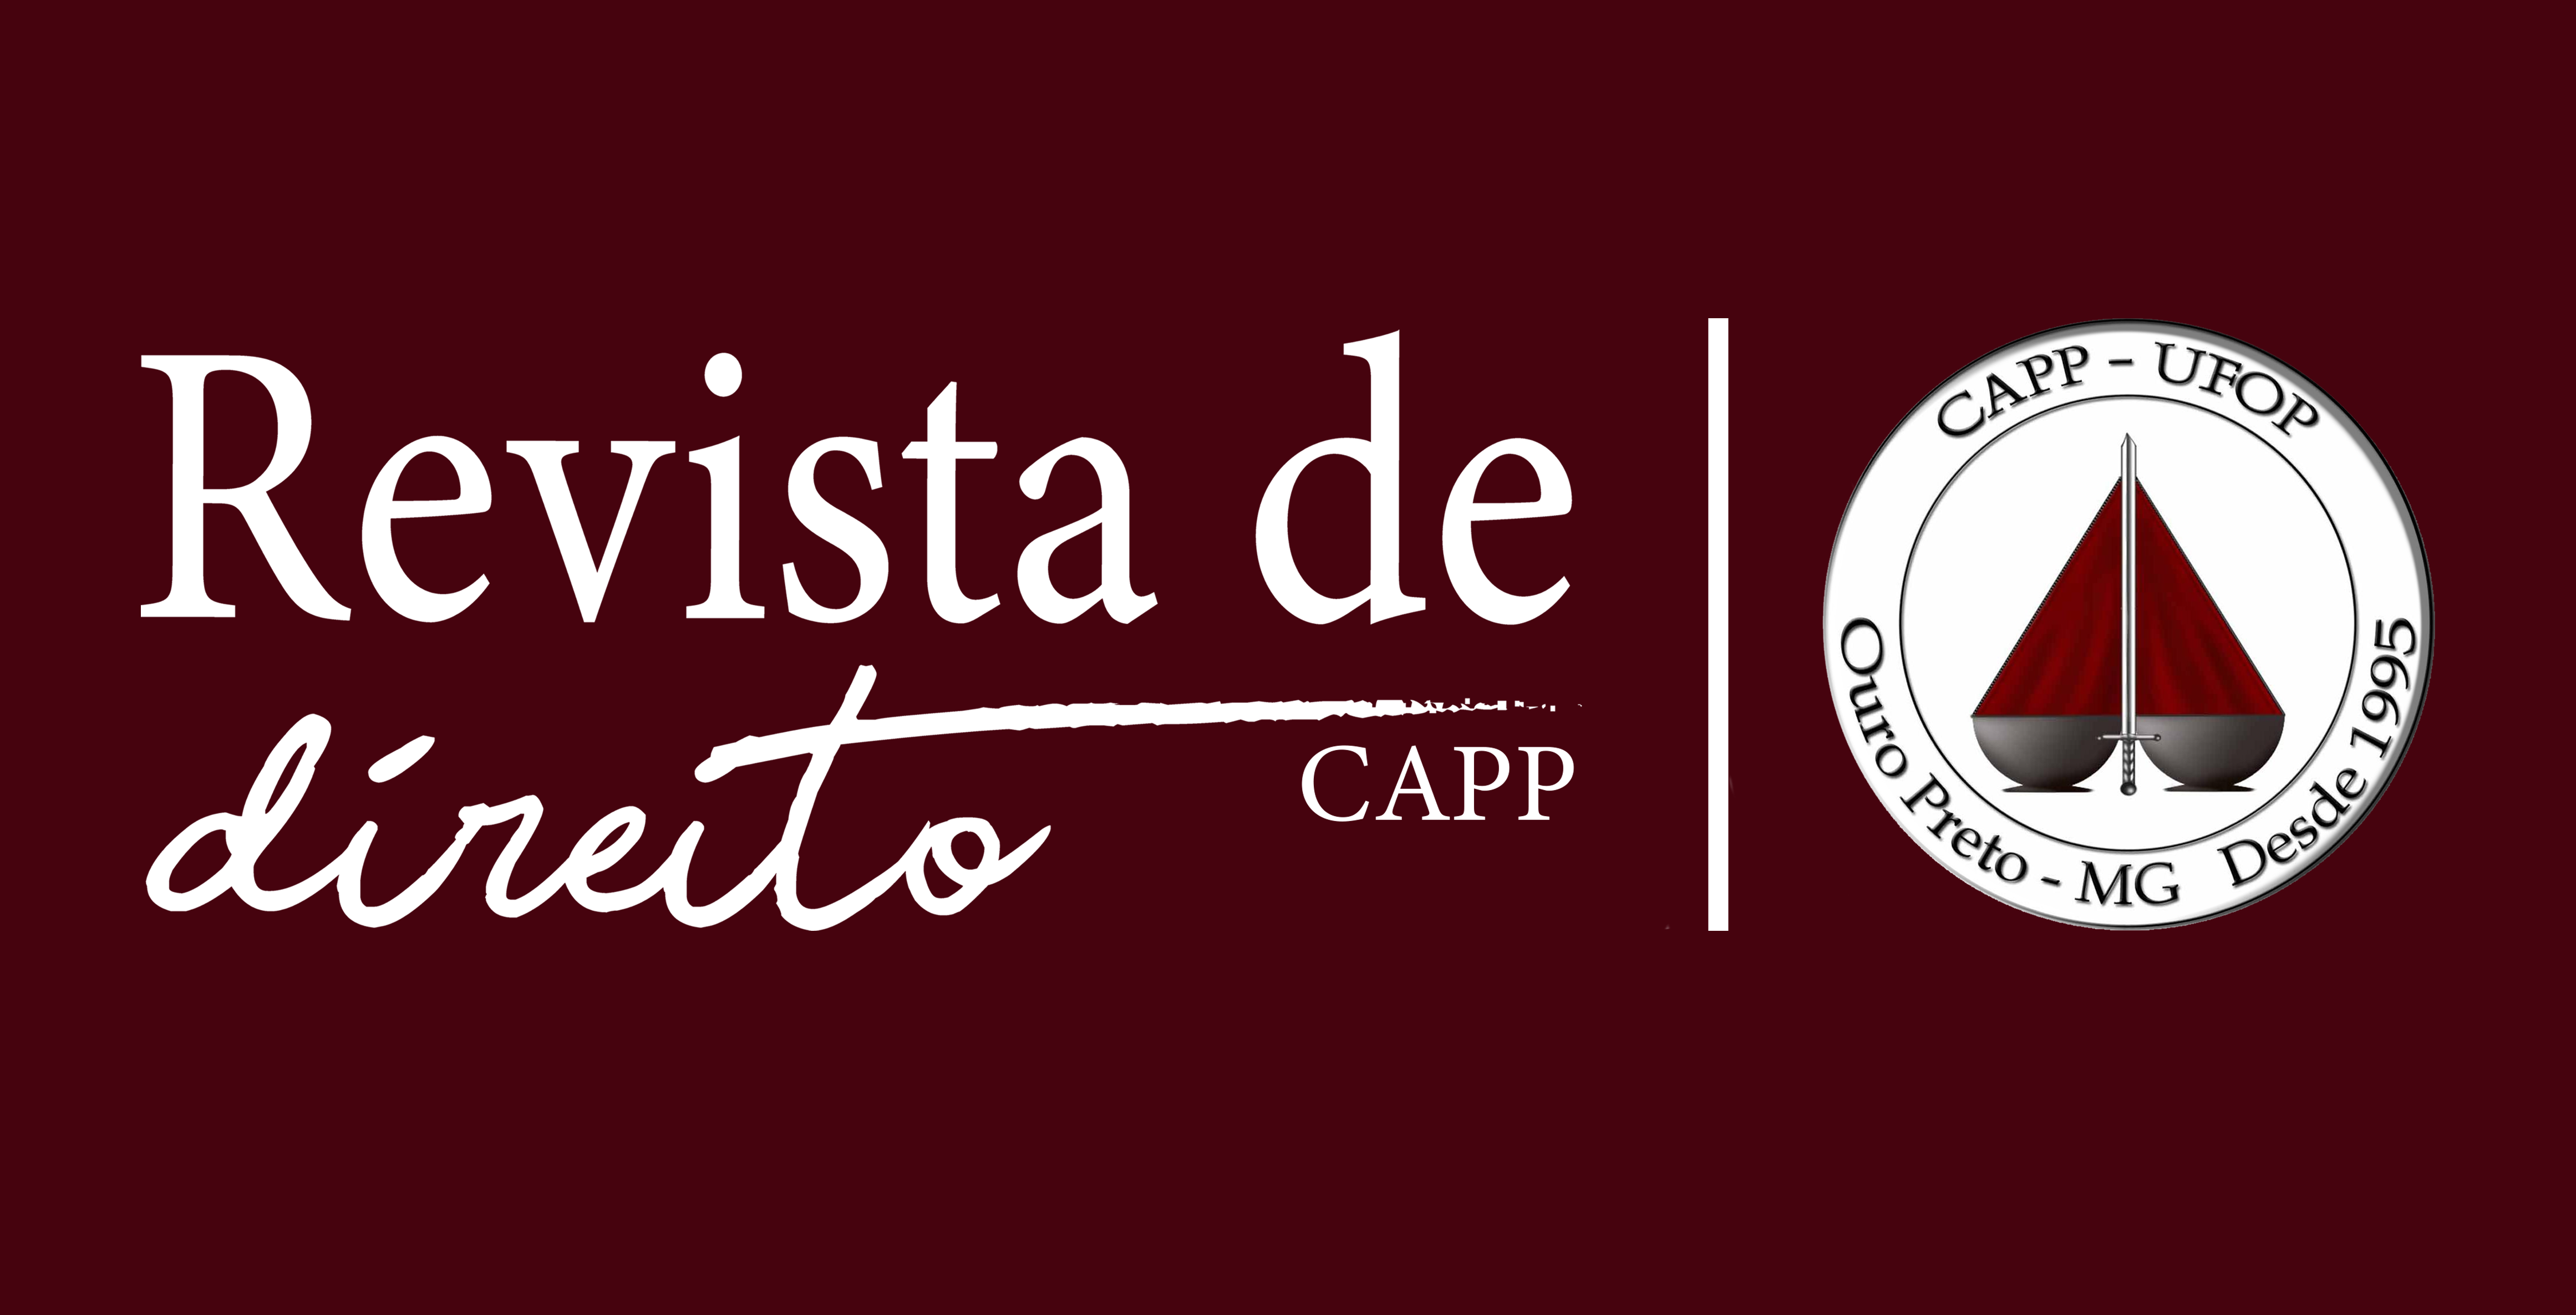 Revista de Direito CAPP - Centro Acadêmico Pedro Paulo